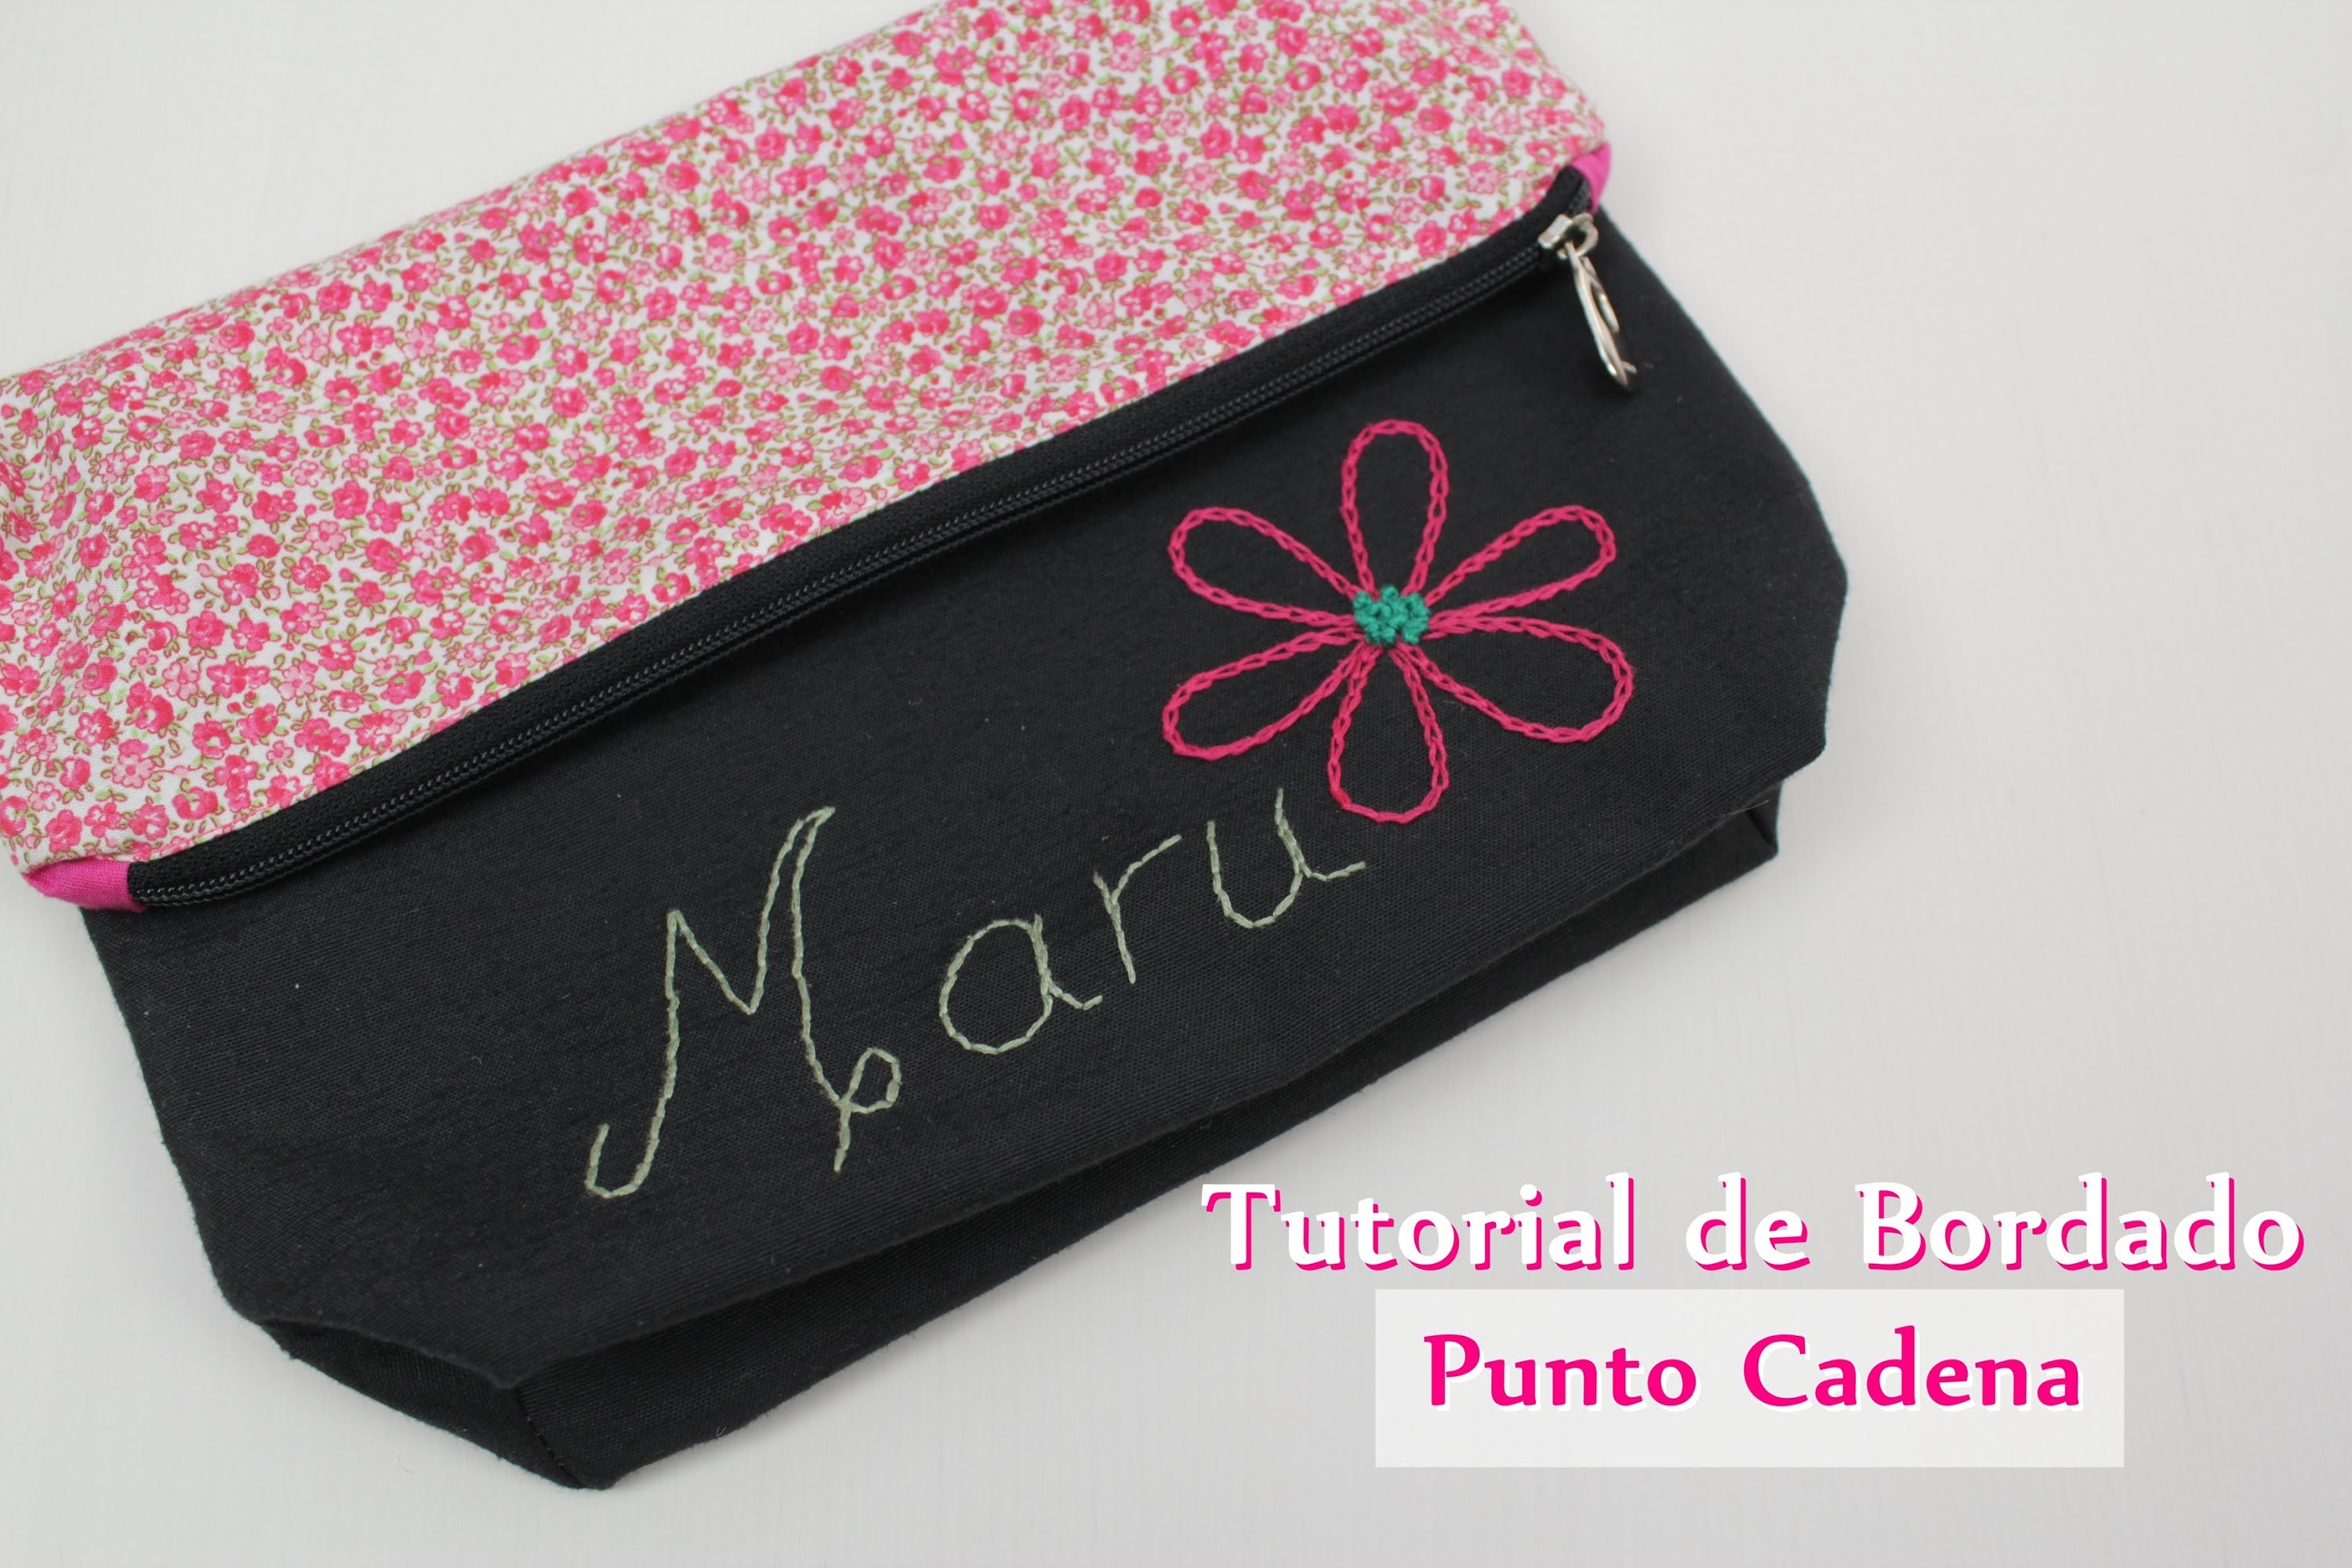 Tutorial #8 - Como bordar Punto Cadena - How to make chain stitch embroidery